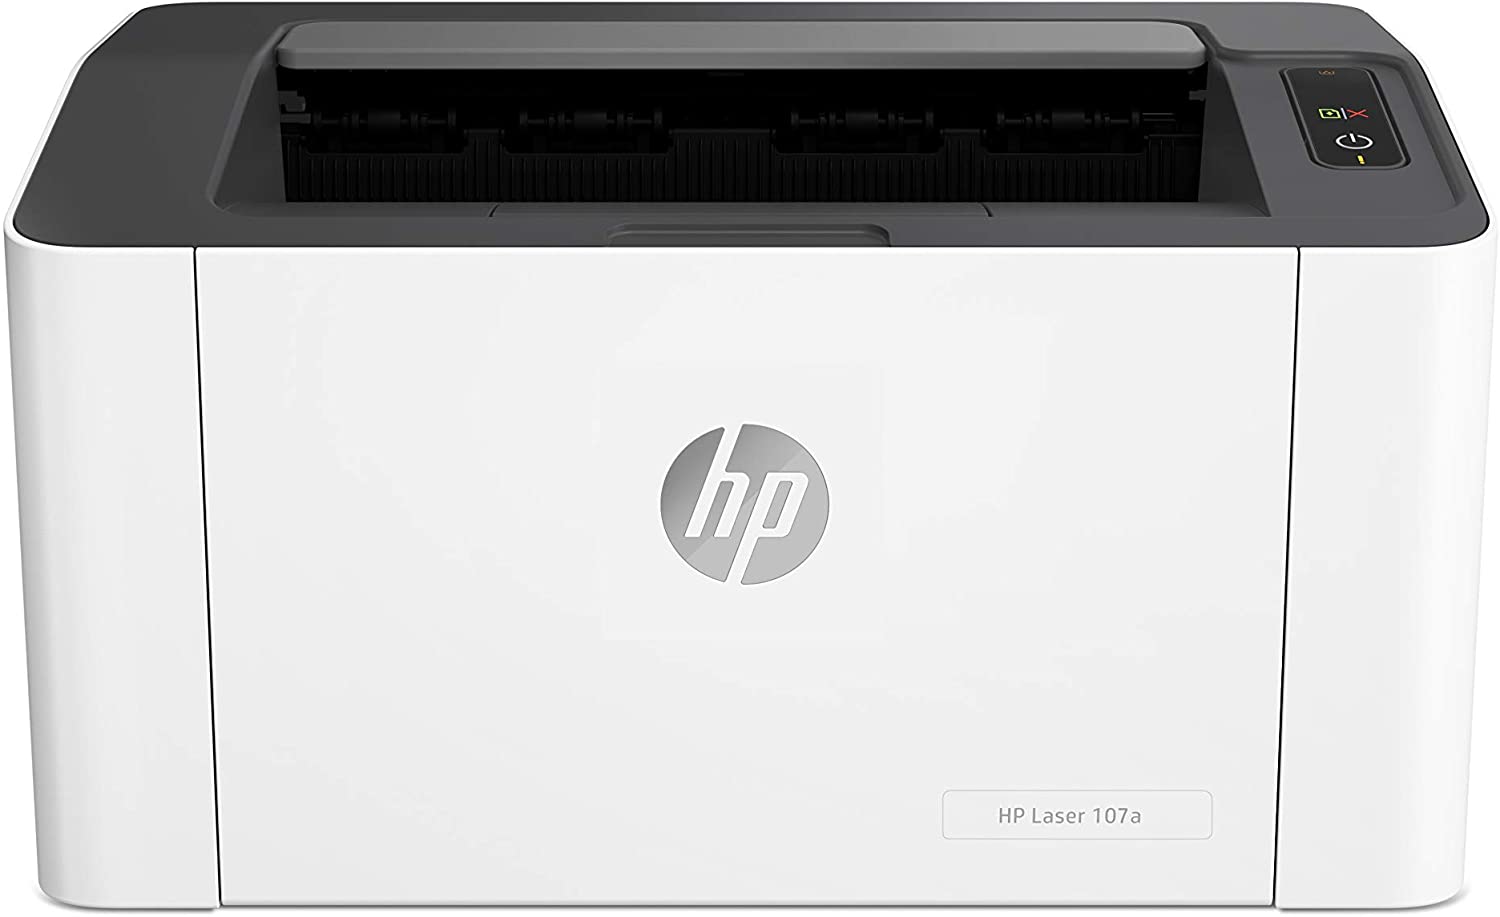 طابعة HP Laser 107a  سرعات طباعة تصل إلى 21 صفحة في الدقيقة - اللون: أبيض